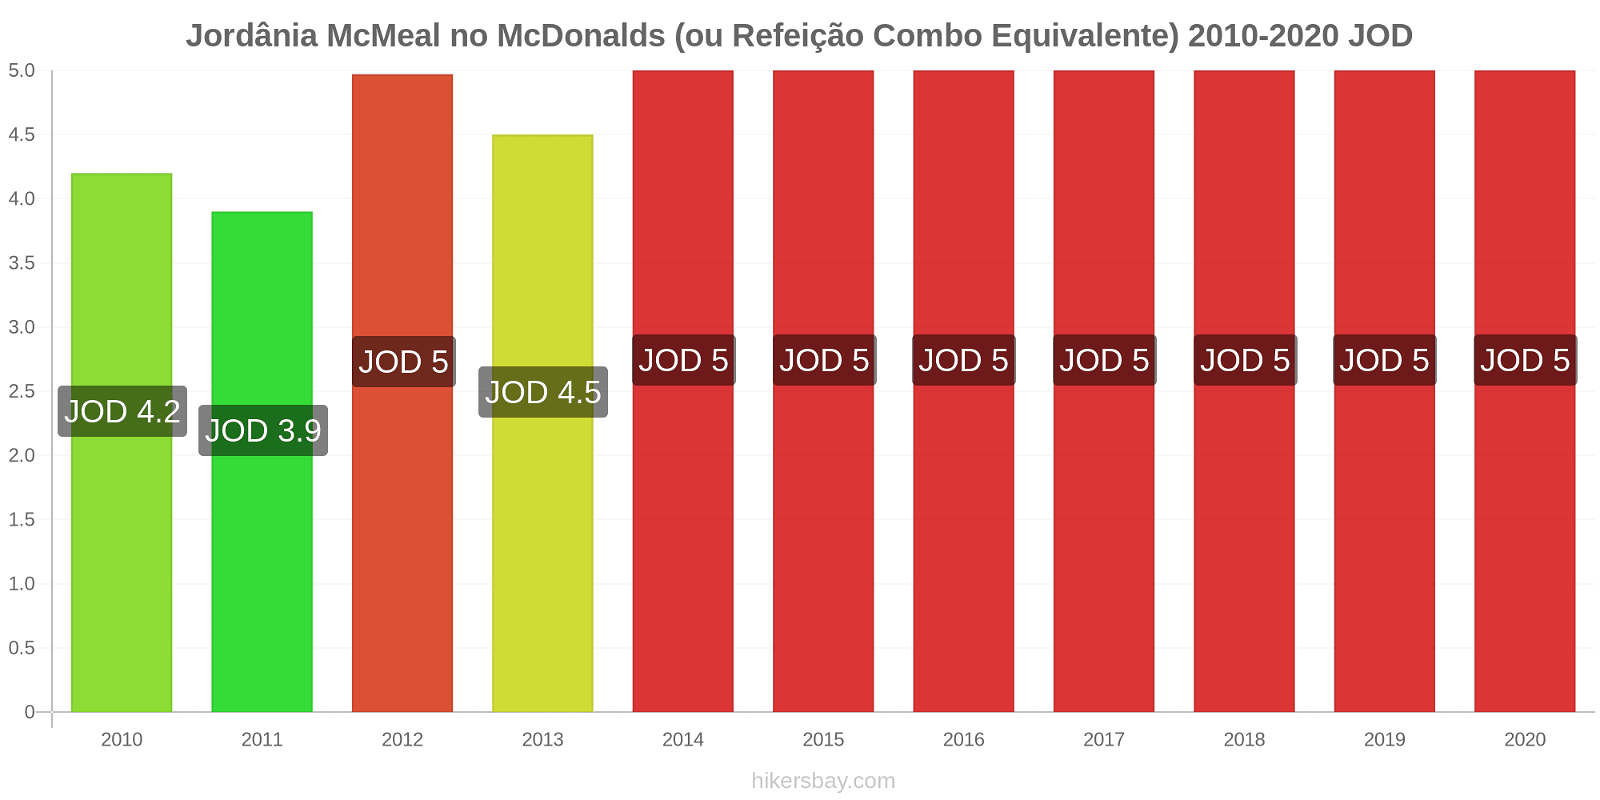 Jordânia variação de preço McMeal no McDonald ' s (ou refeição Combo equivalente) hikersbay.com